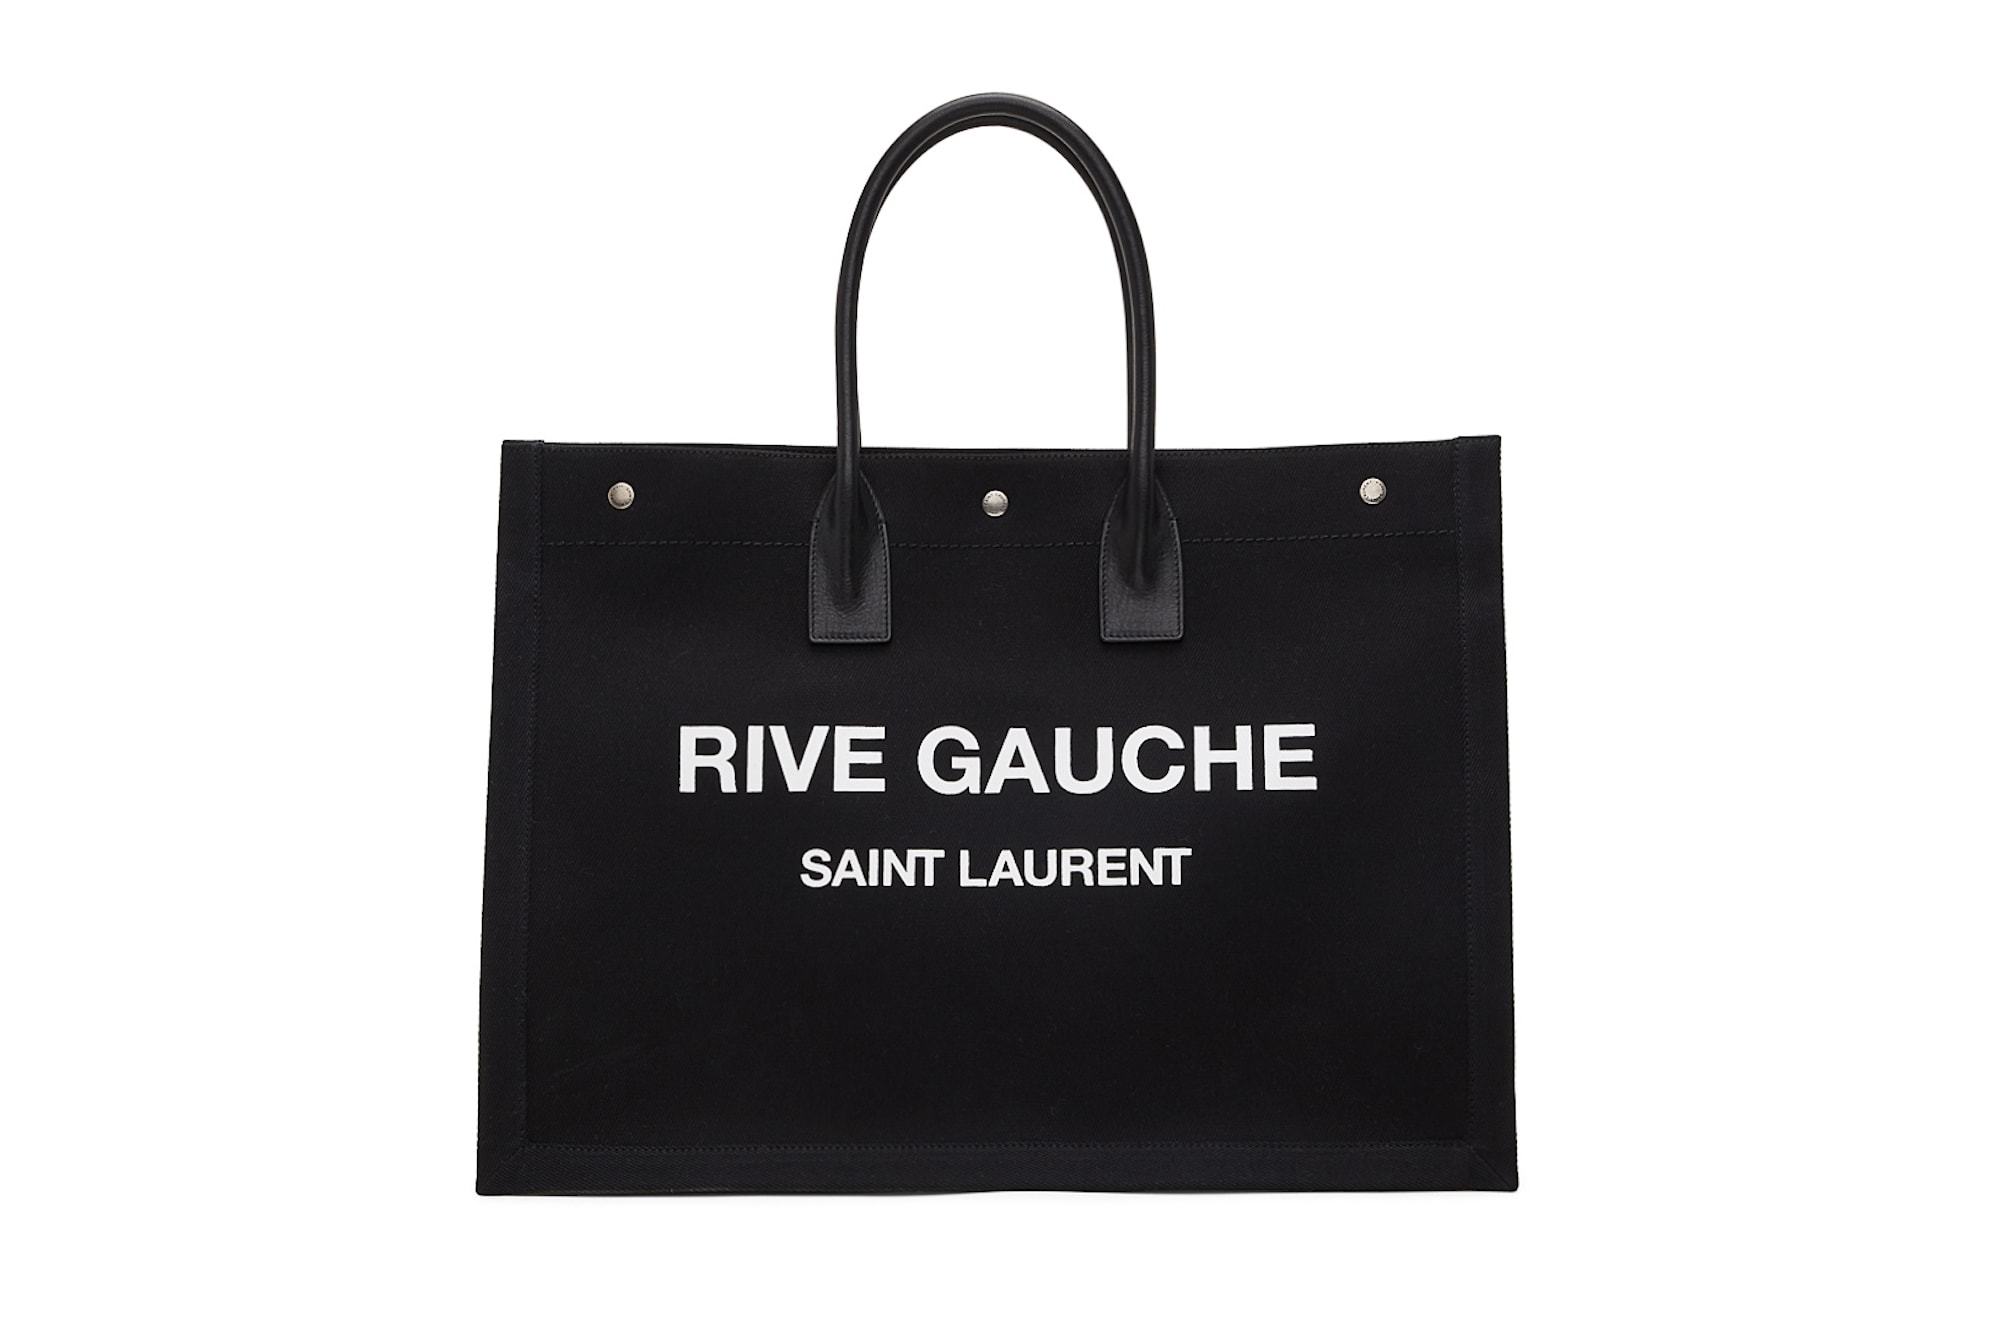 Saint Laurent Logo Canvas Tote Bag Black Beige White Print YSL Big Bag Designer